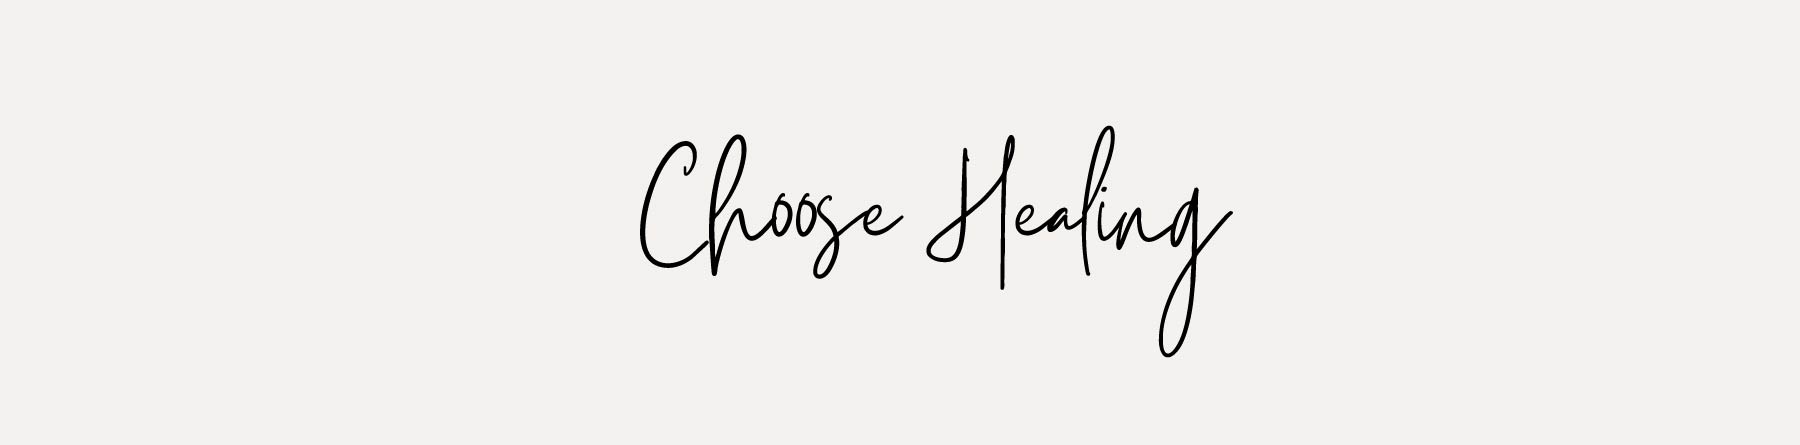 choose healing